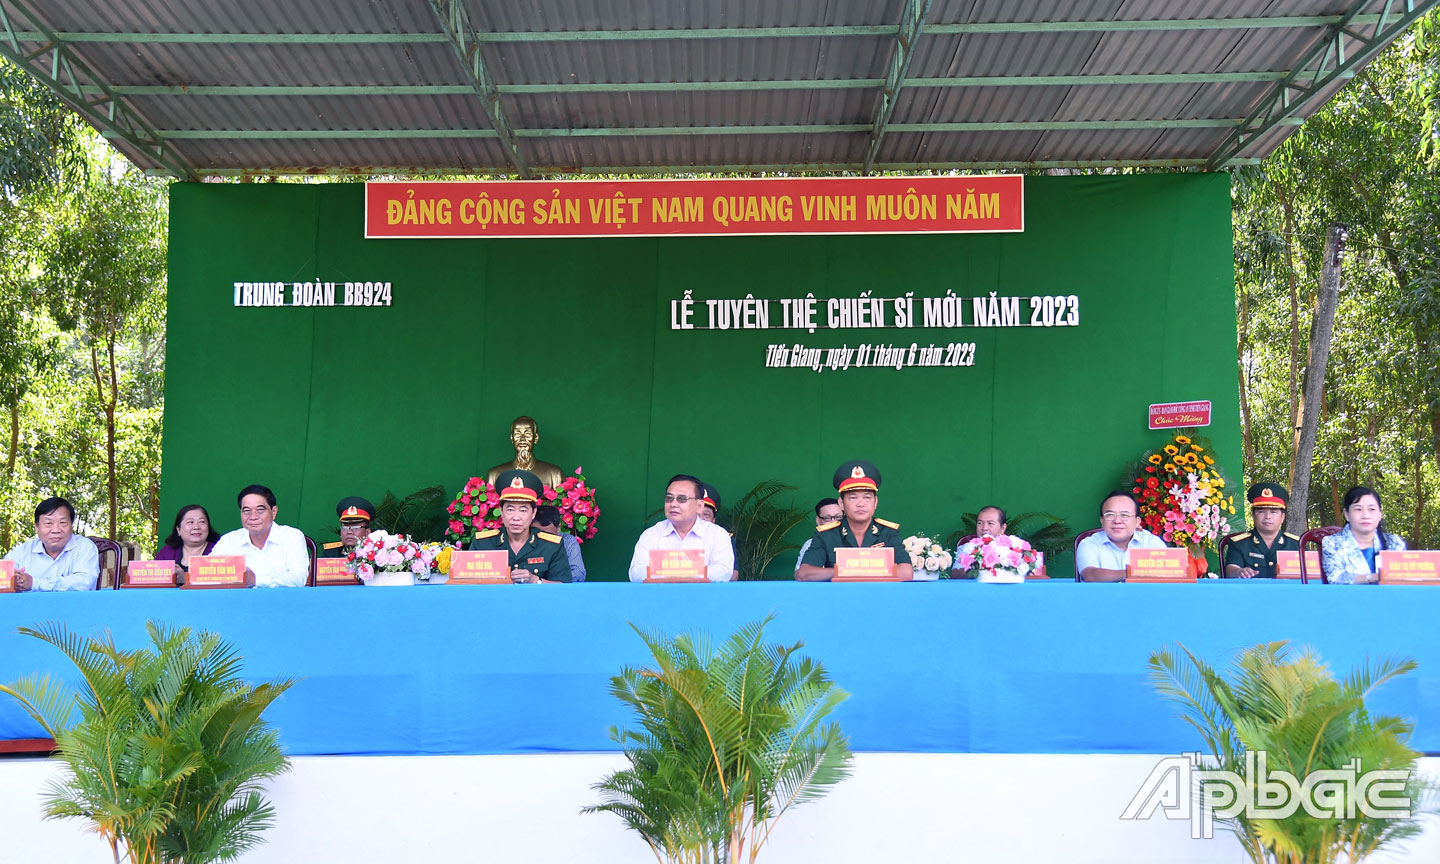 Đoàn Chủ tịch tham dự Lễ Tuyên thệ chiến sĩ mới năm 2023.